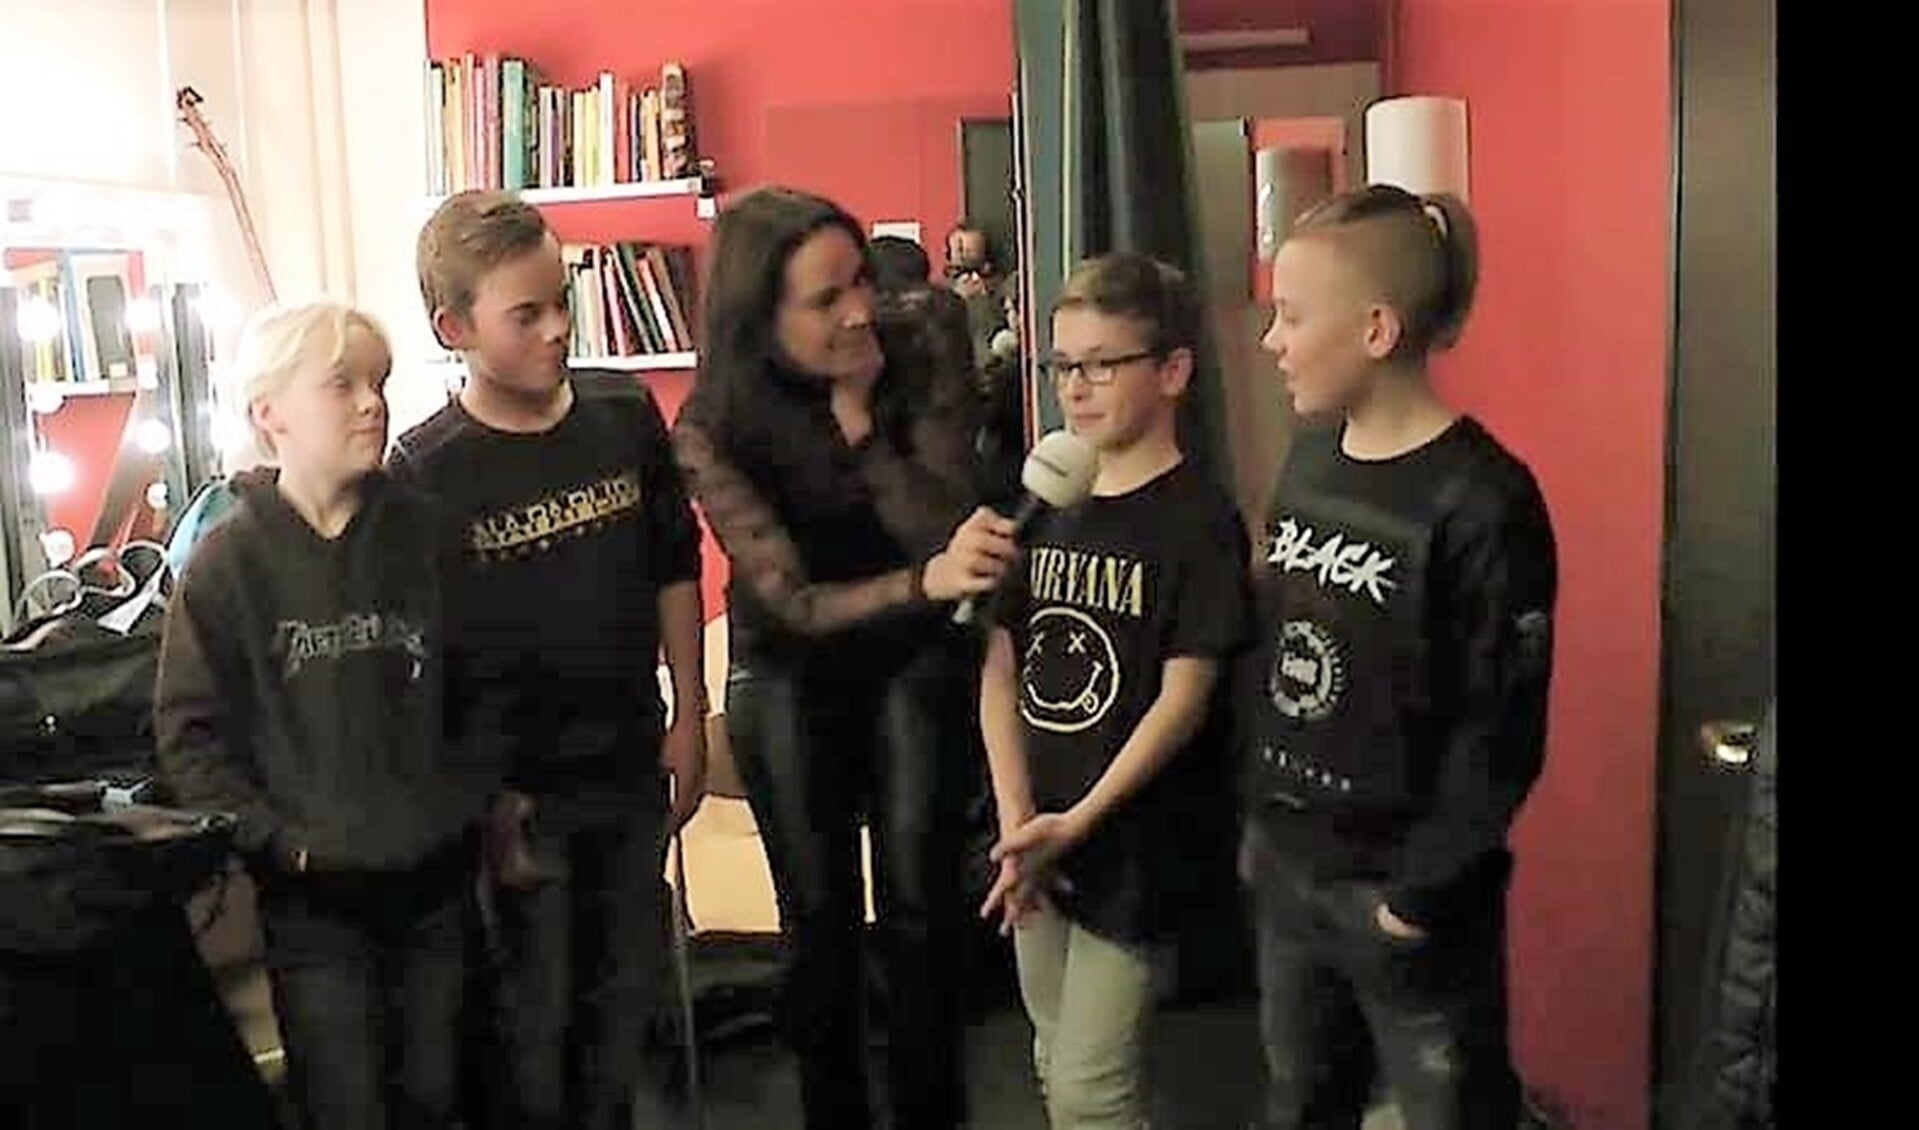 Alice Hooft interviewt enkele bandleden (foto: Midvliet TV).